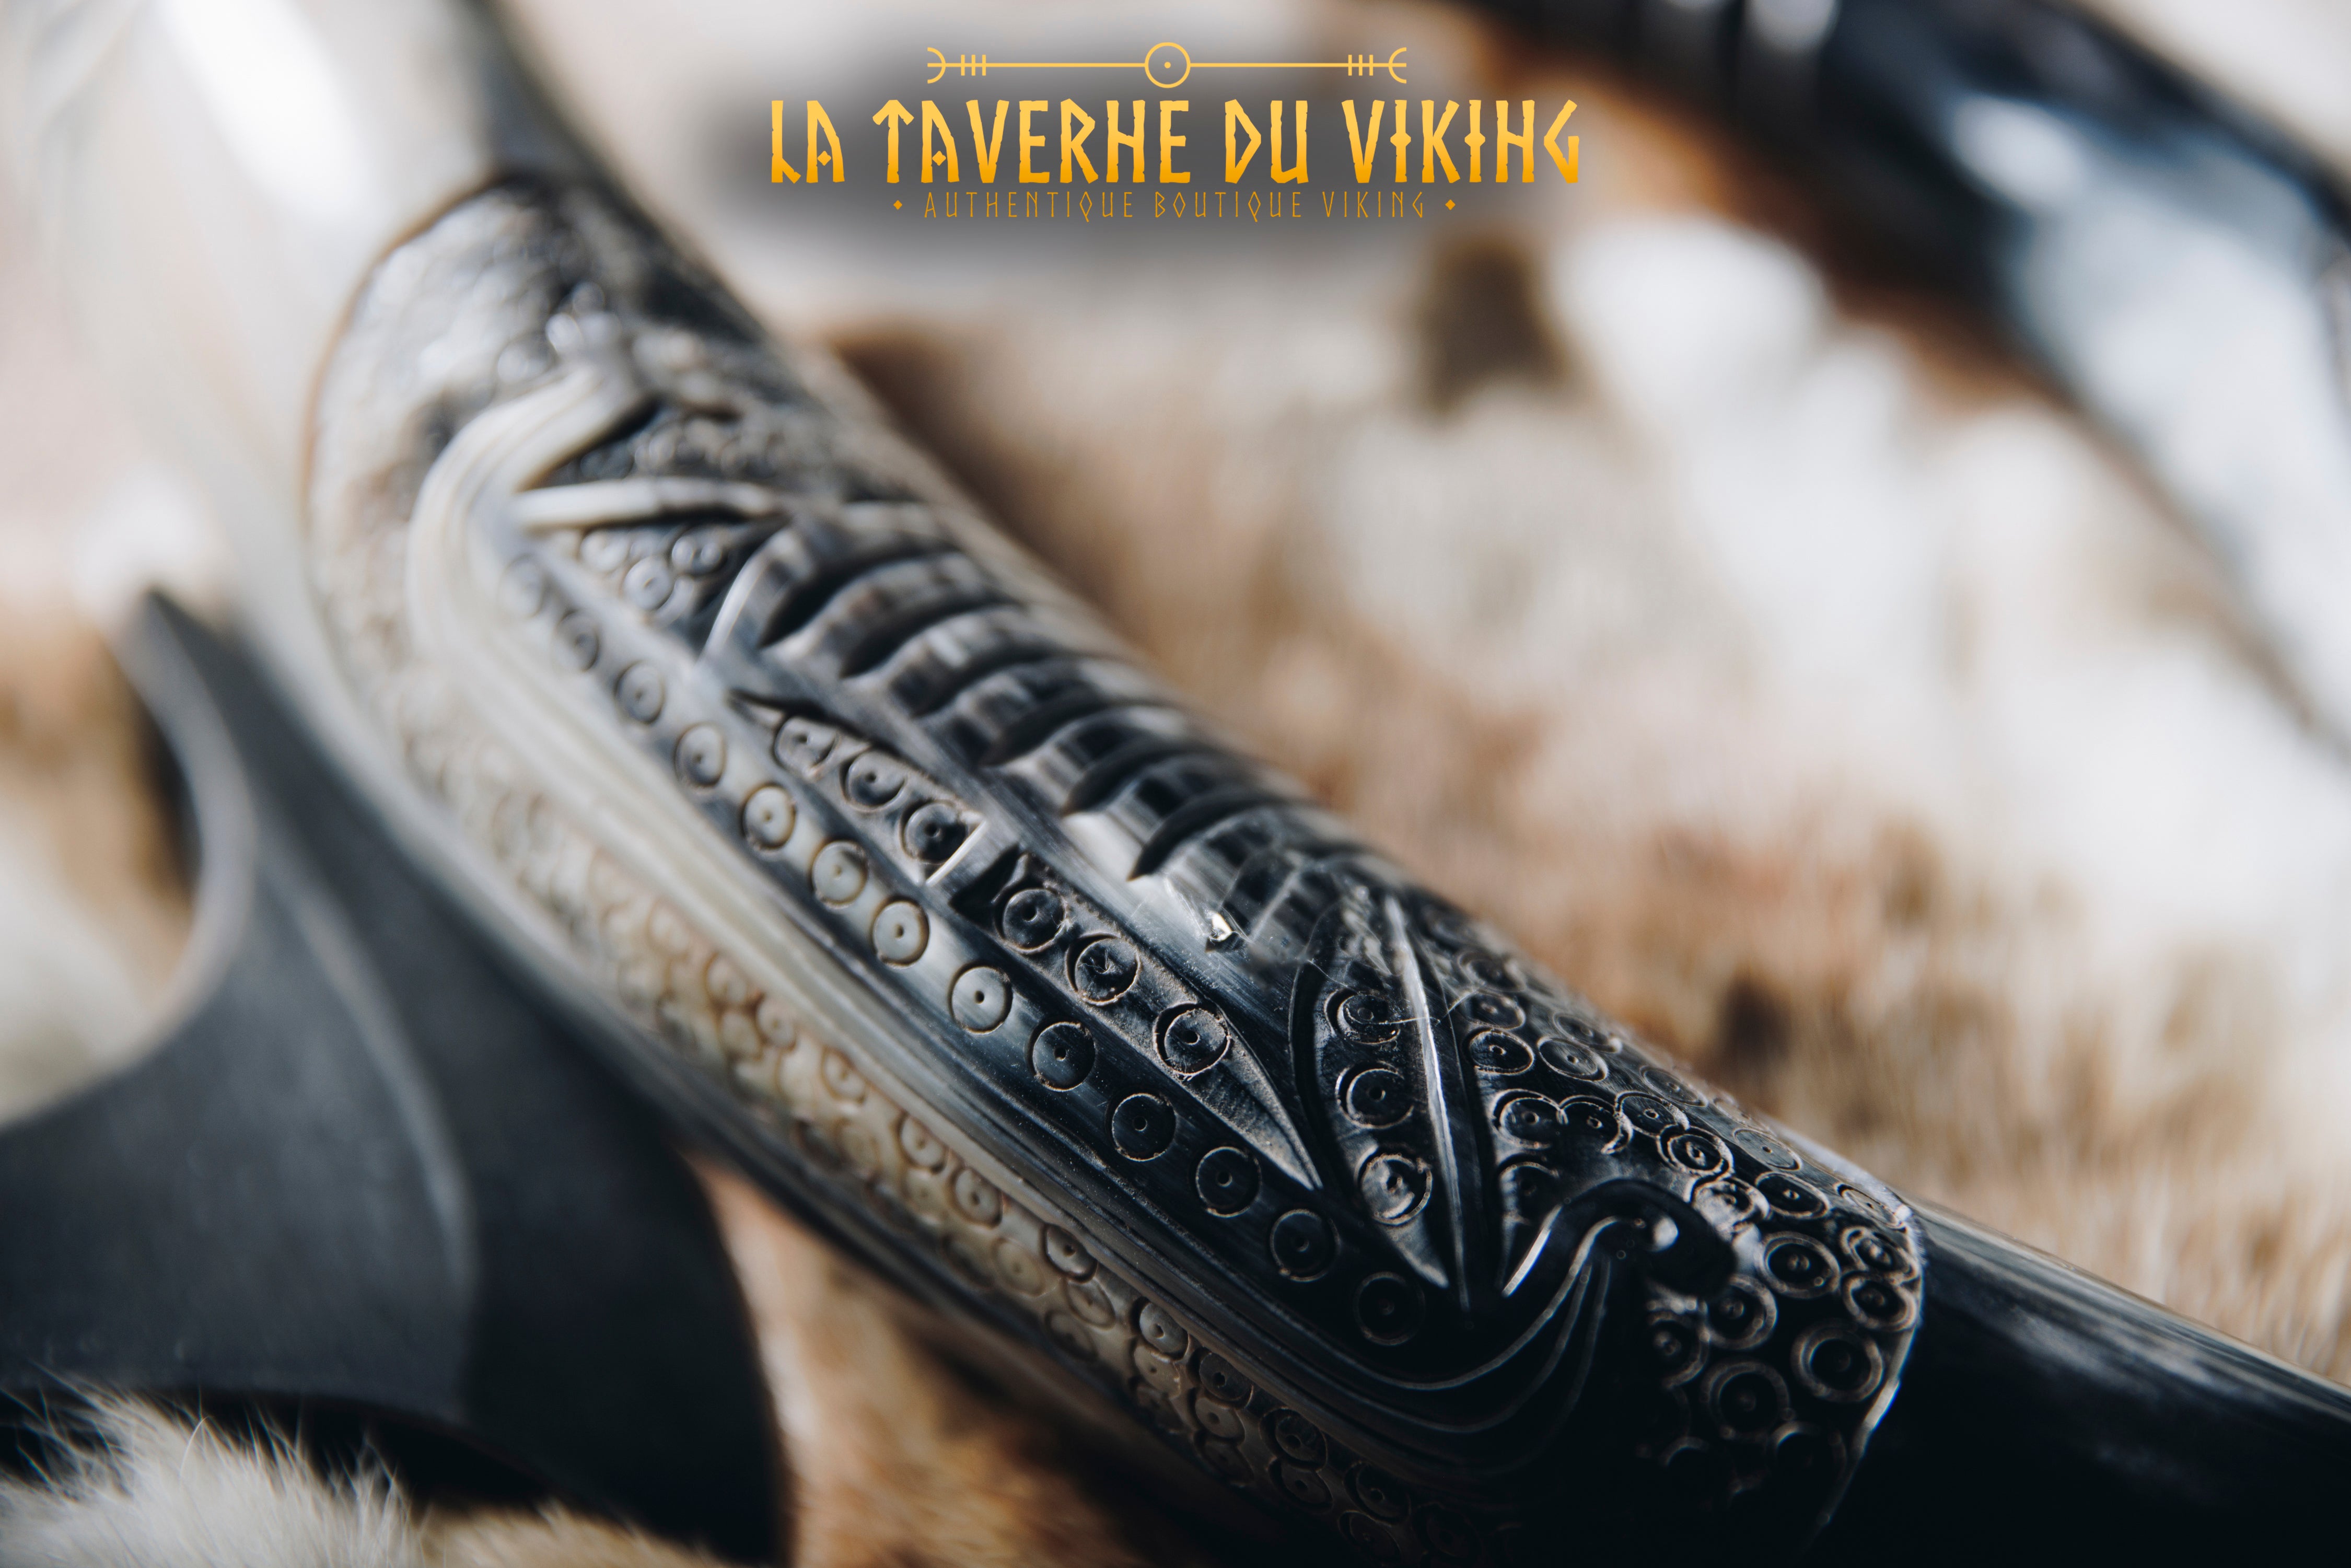 Corne Drakkar - 1L - La Taverne du Viking